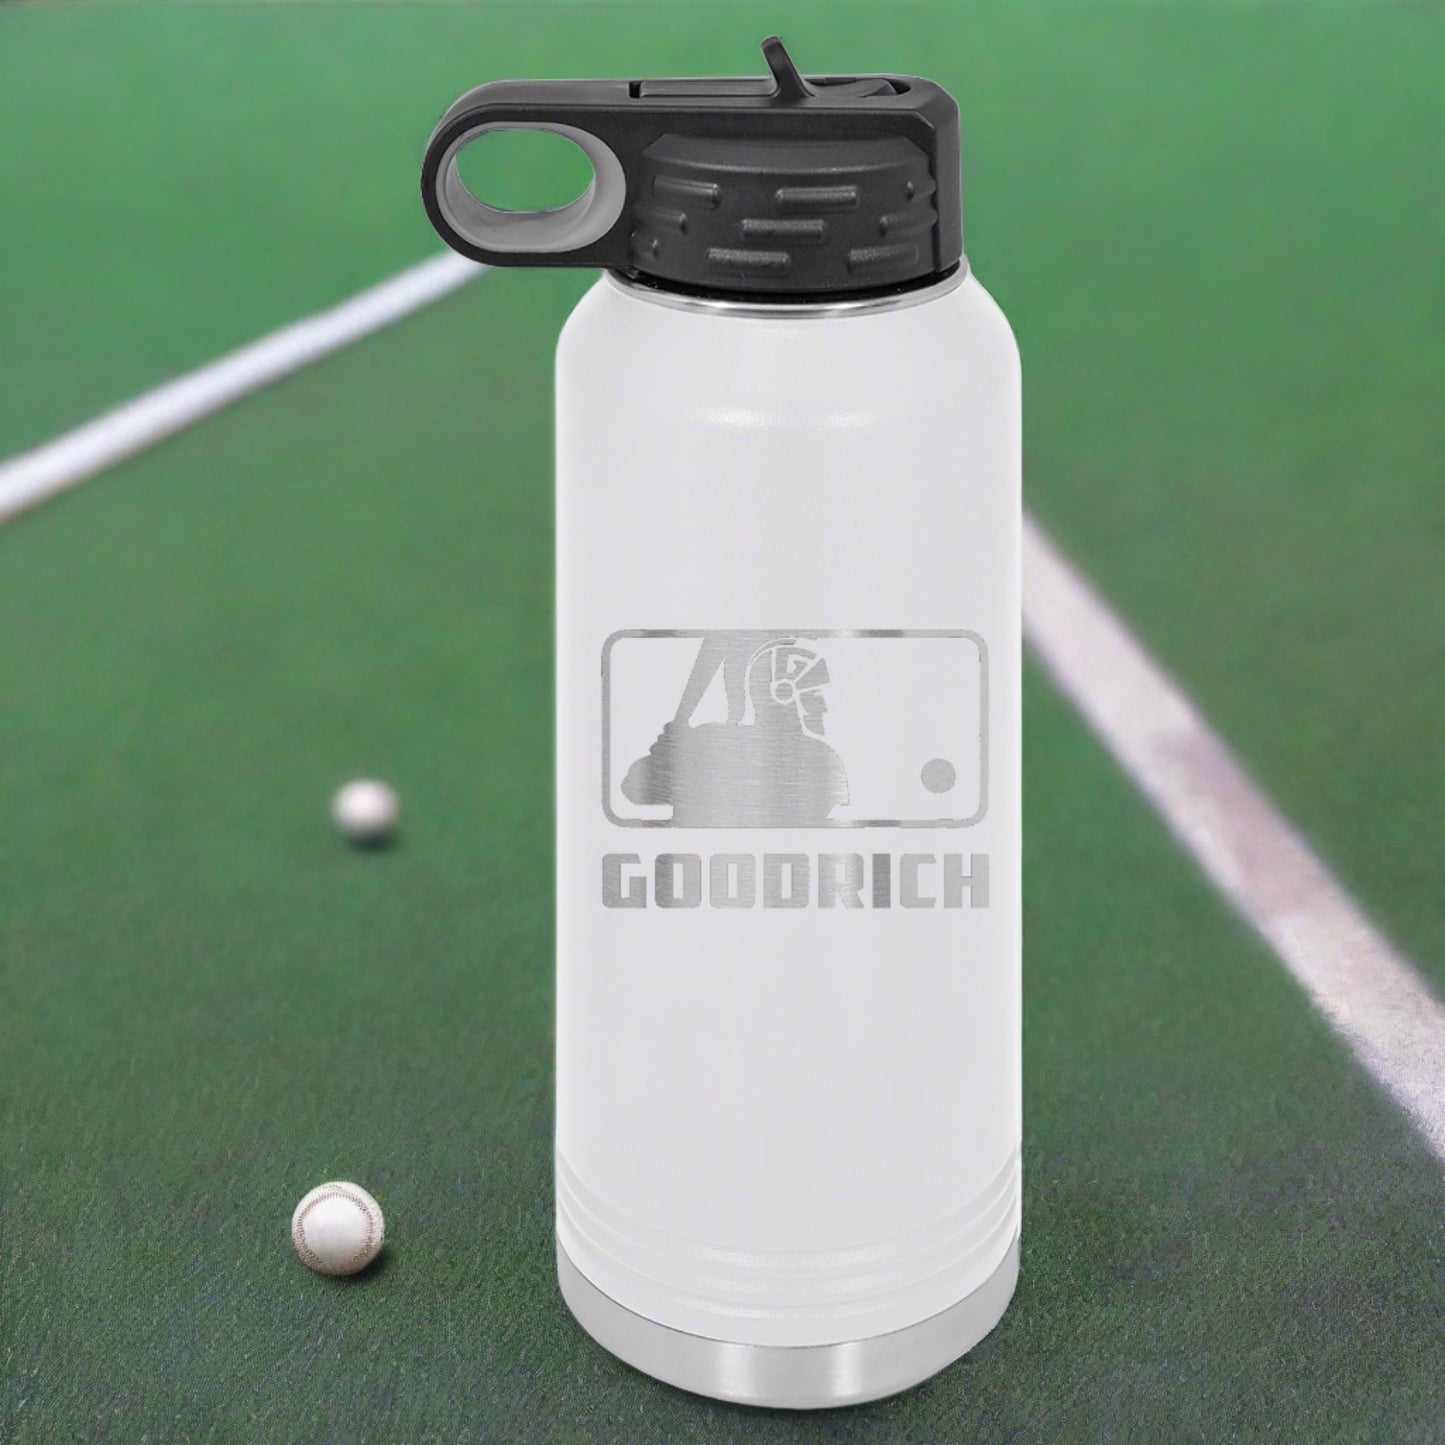 Goodrich Baseball Engraved 32 oz Water Bottle